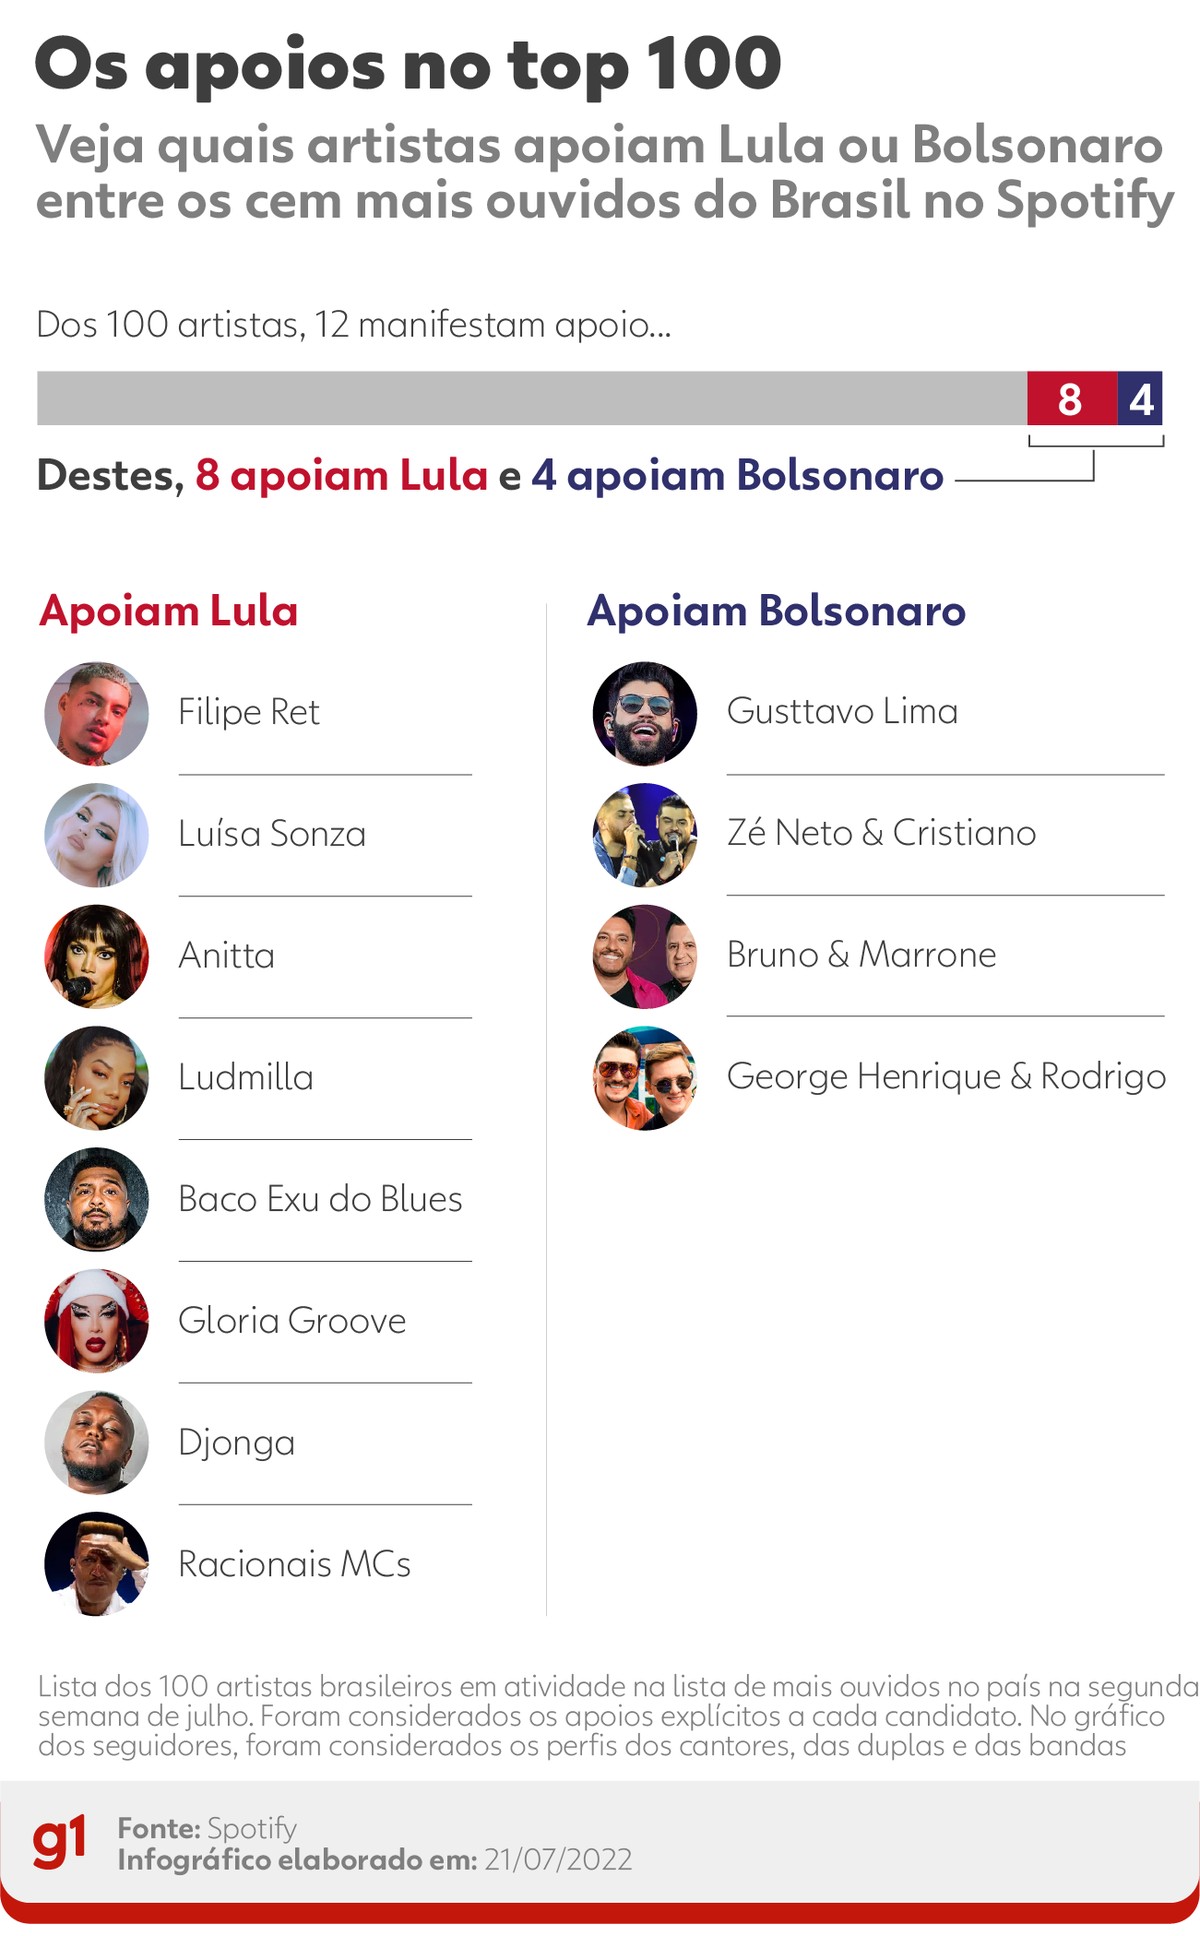 Dos 100 artistas mais ouvidos do país, 8 apoiam Lula, 4 são pró